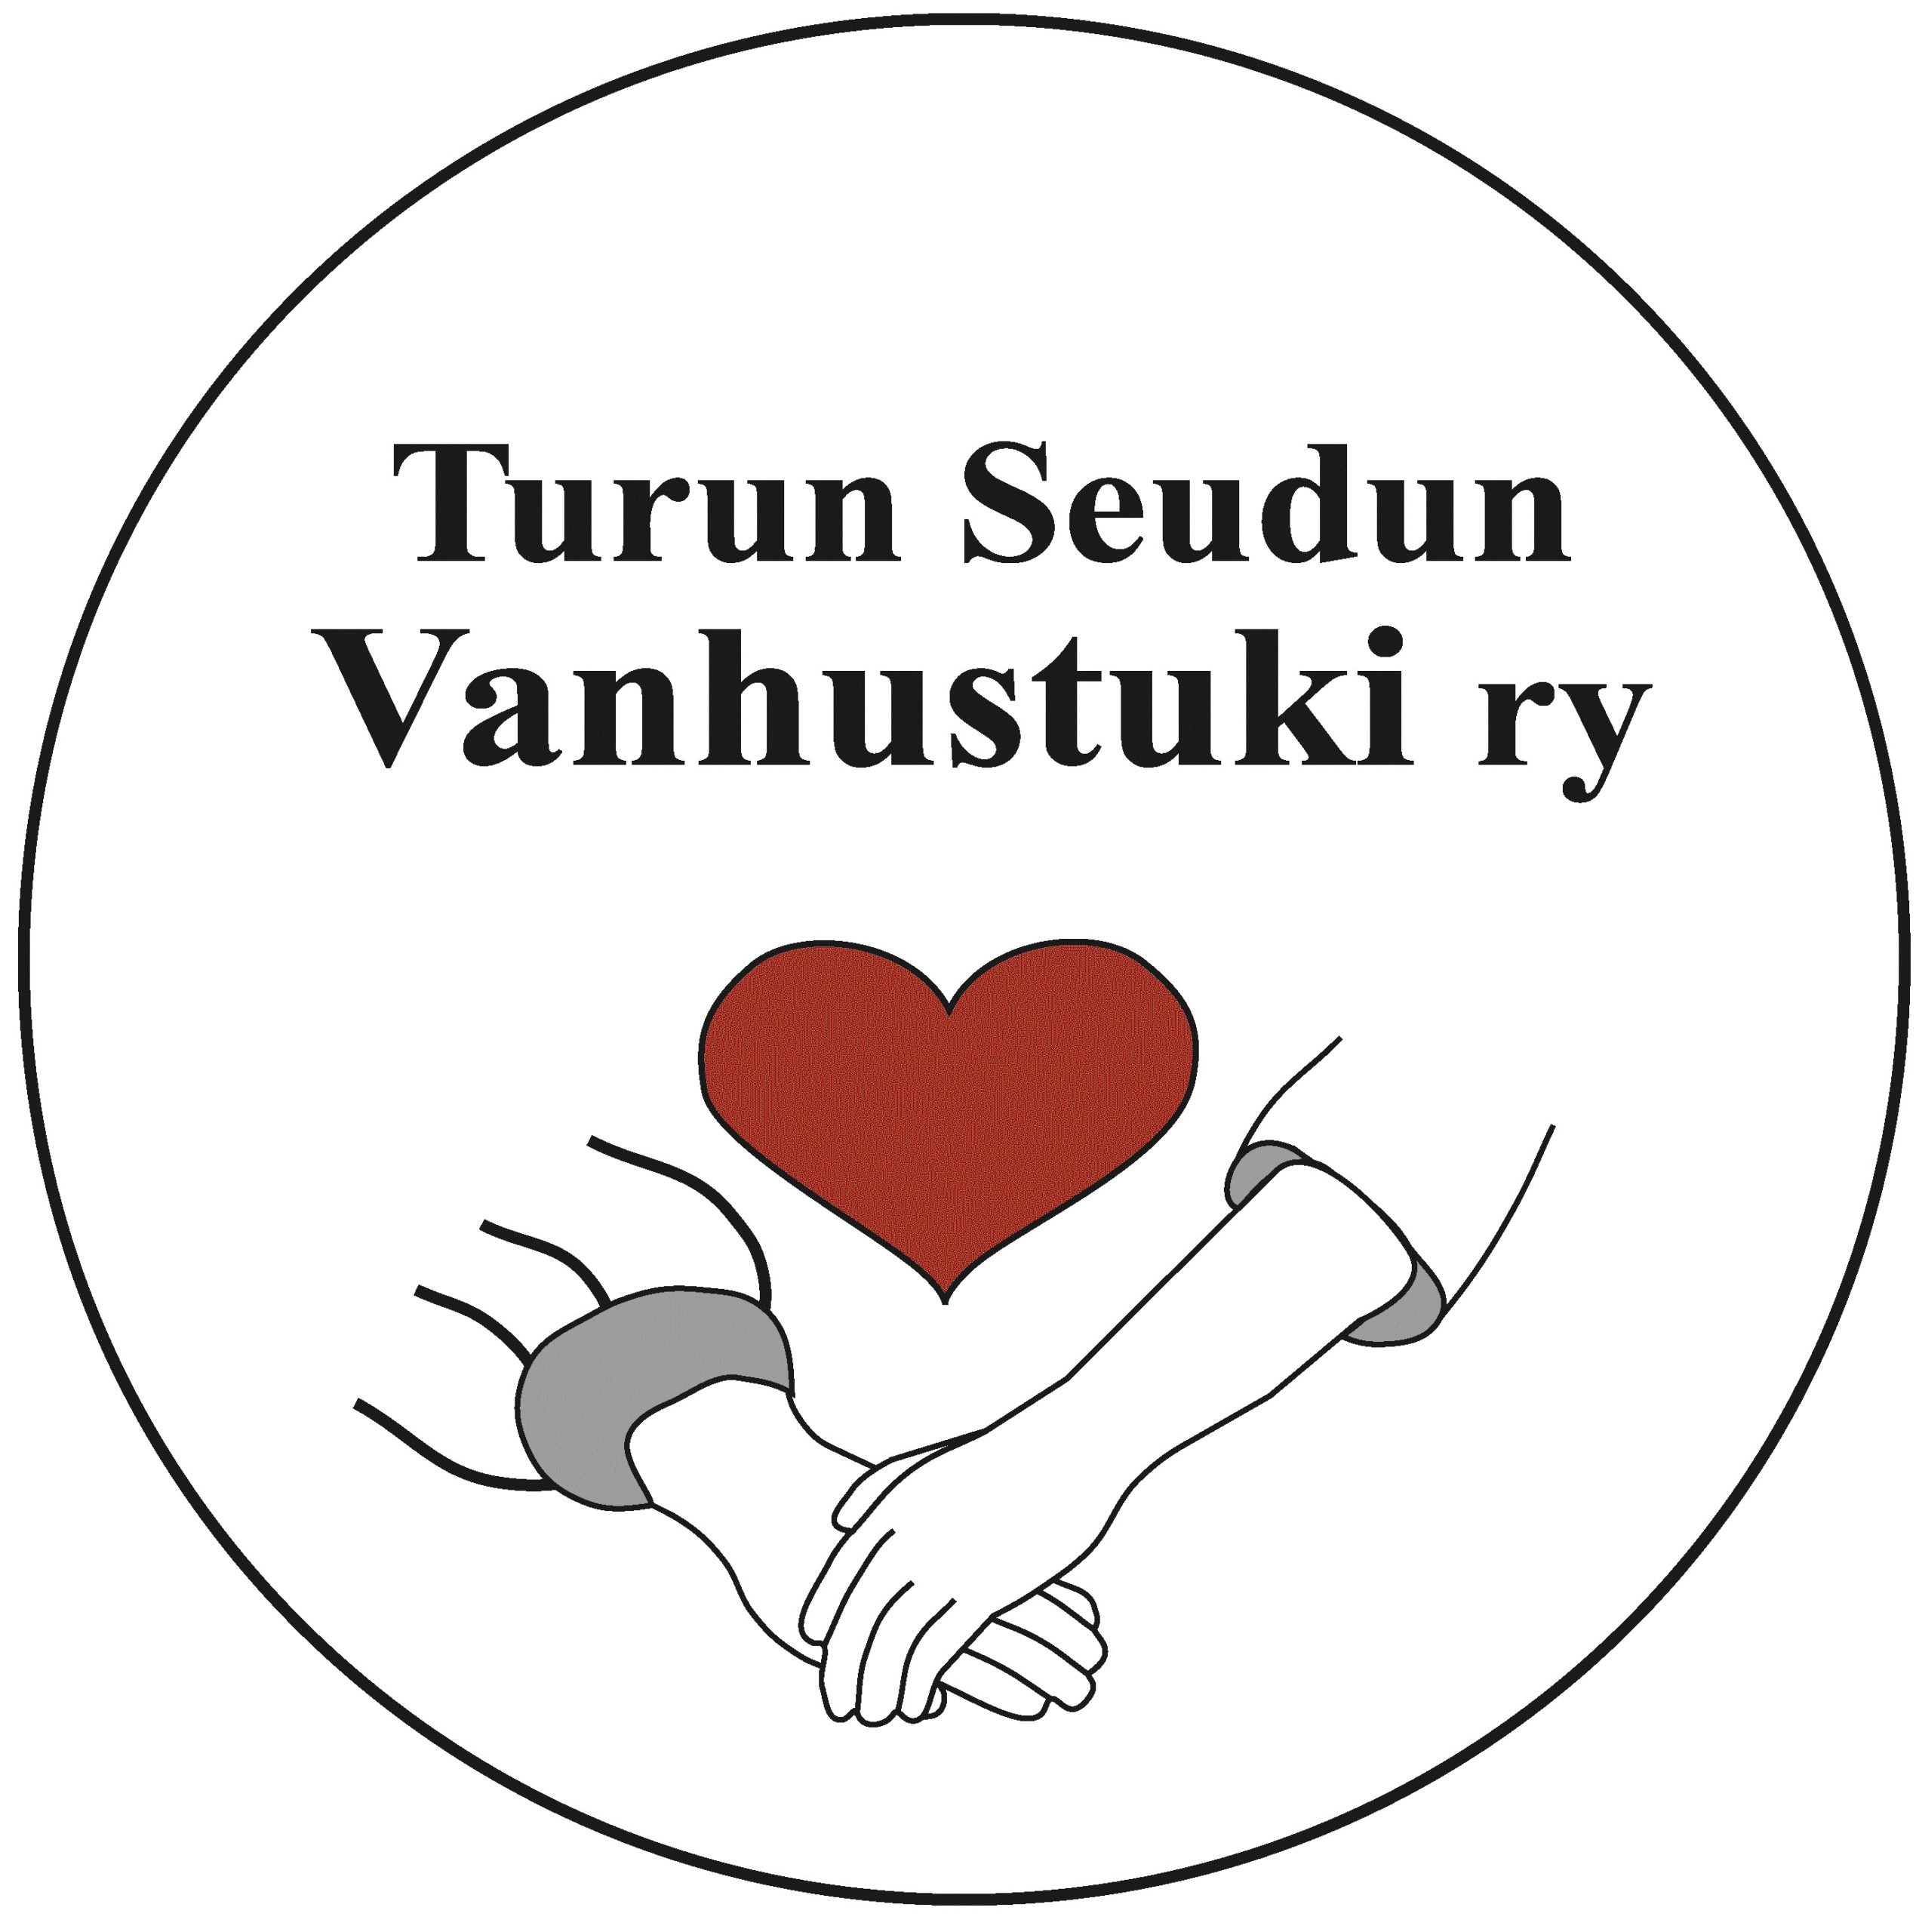 Turun Seudun Vanhustuki logo